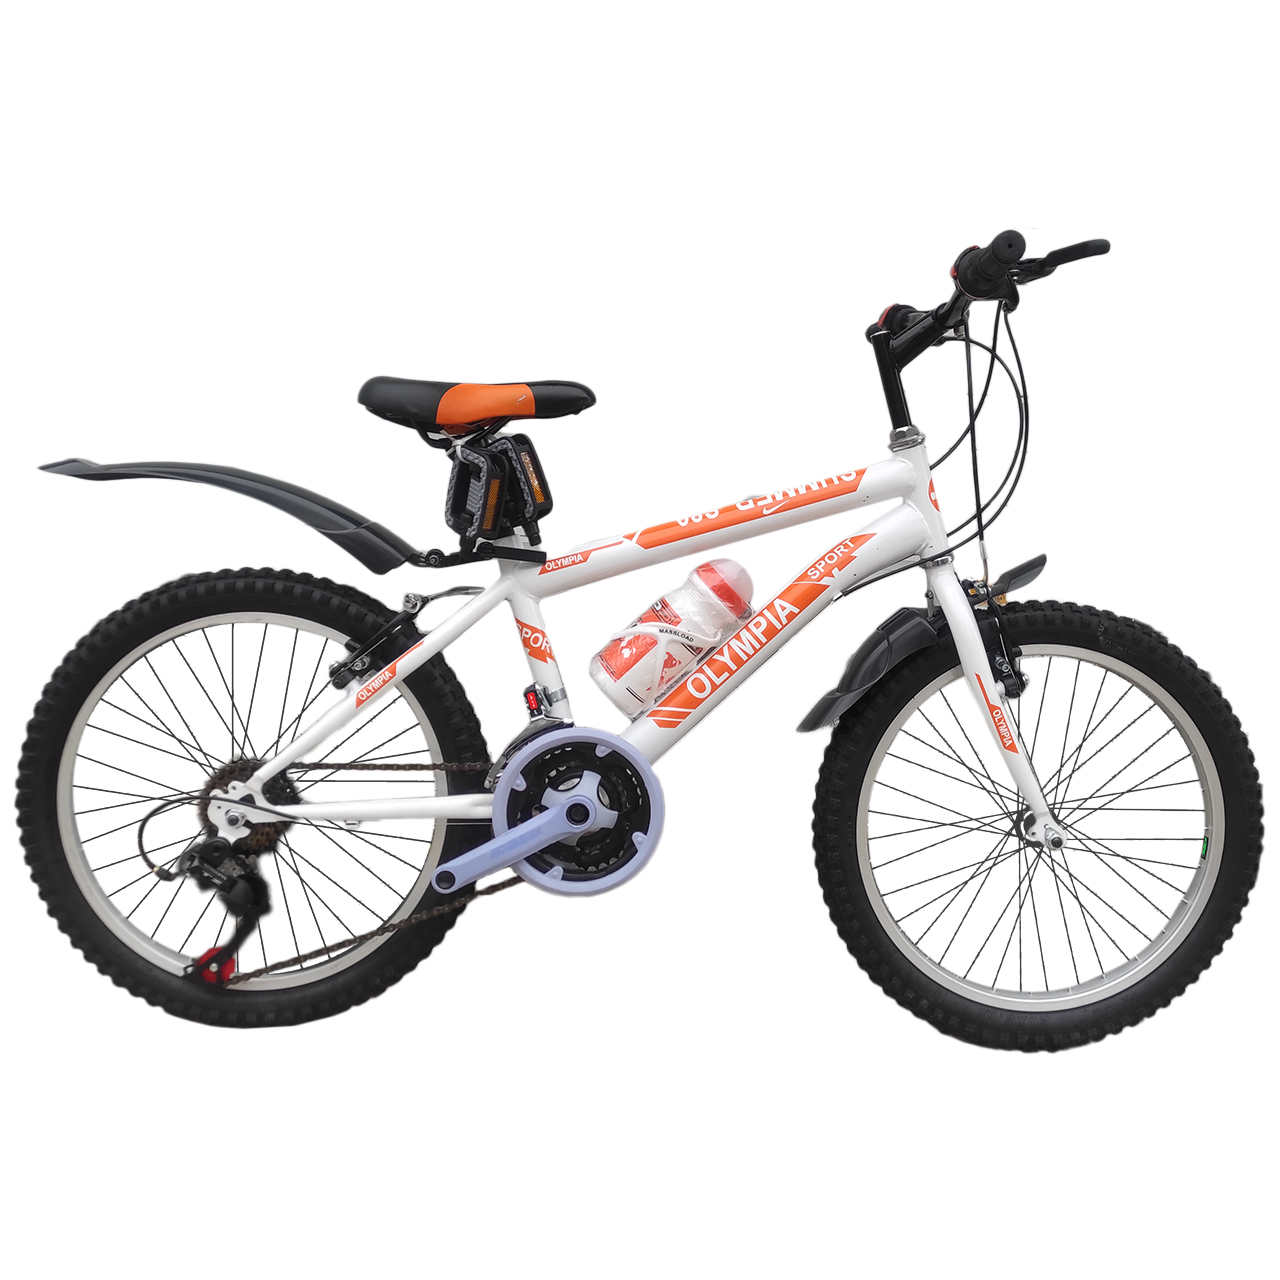 نکته خرید - قیمت روز دوچرخه کوهستان المپیا مدل summer 020 سایز 20 خرید